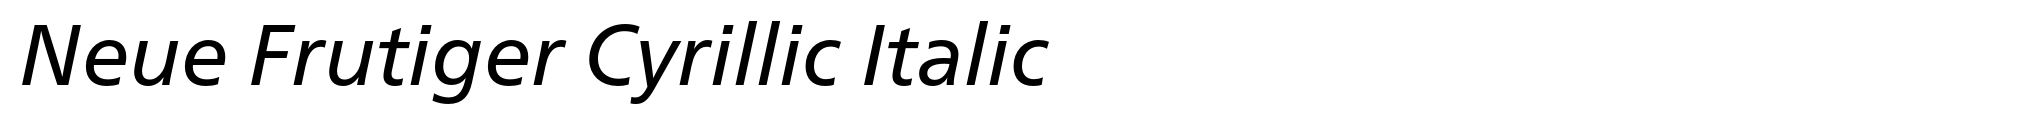 Neue Frutiger Cyrillic Italic image